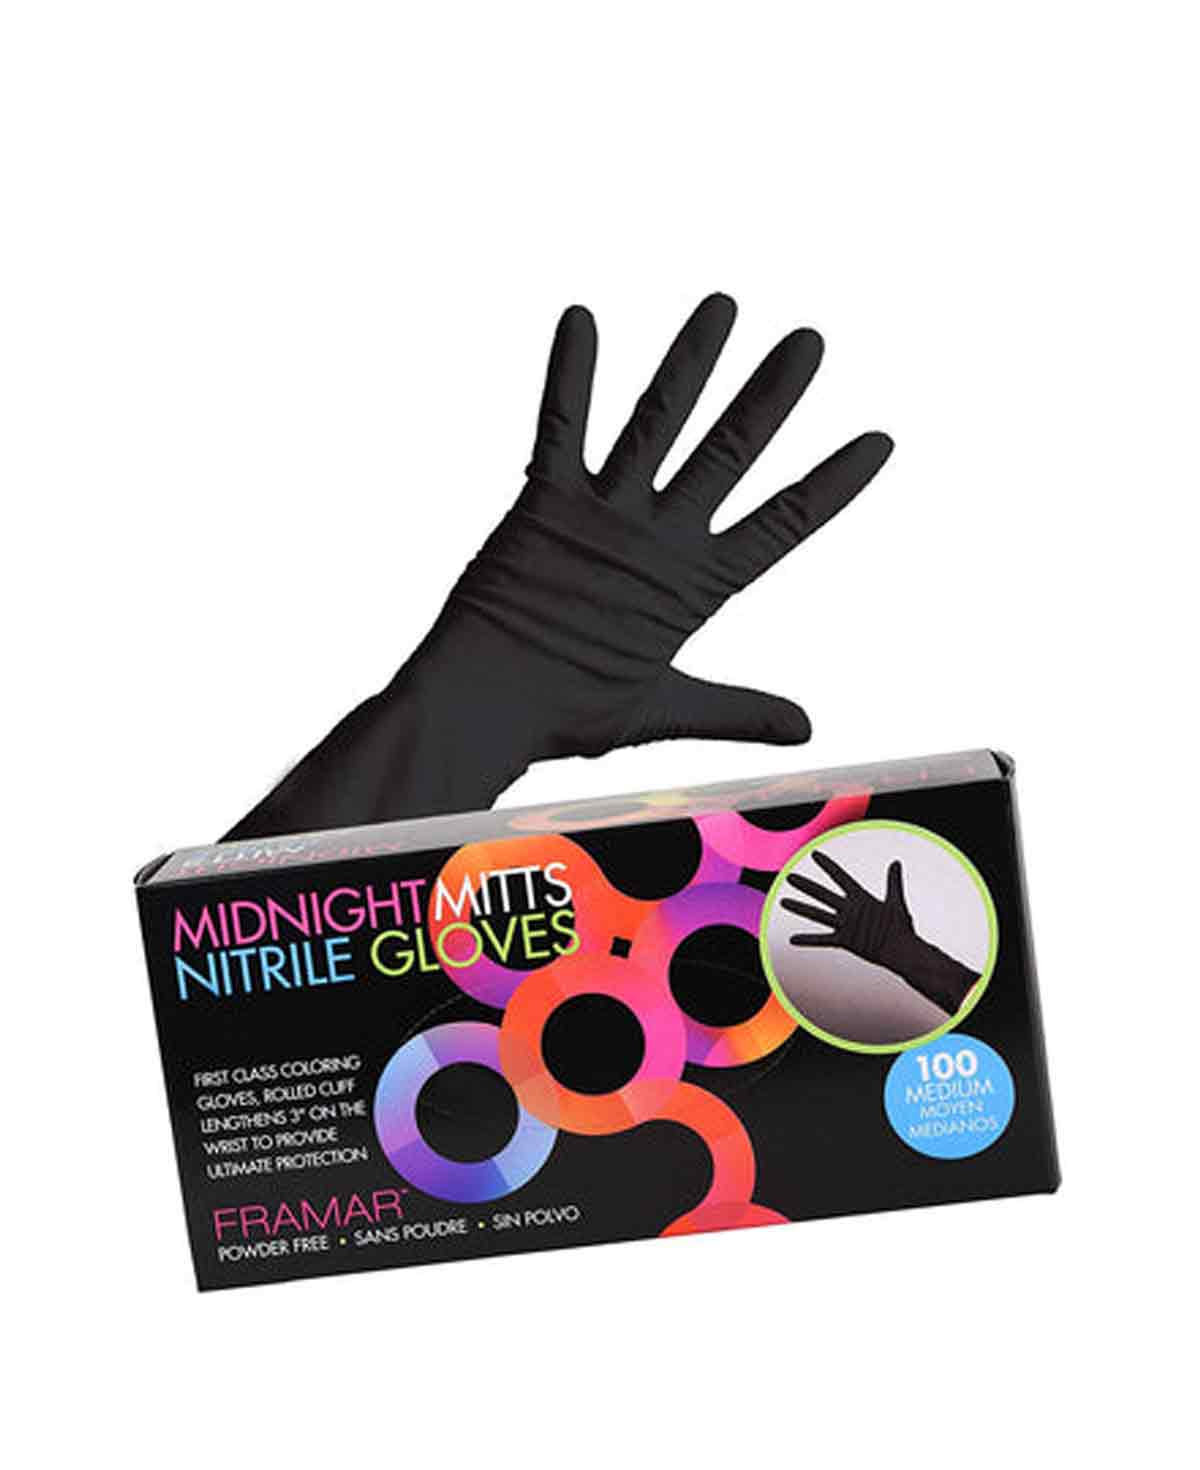 Framar Midnight Mitts Nitrile Gloves - Medium